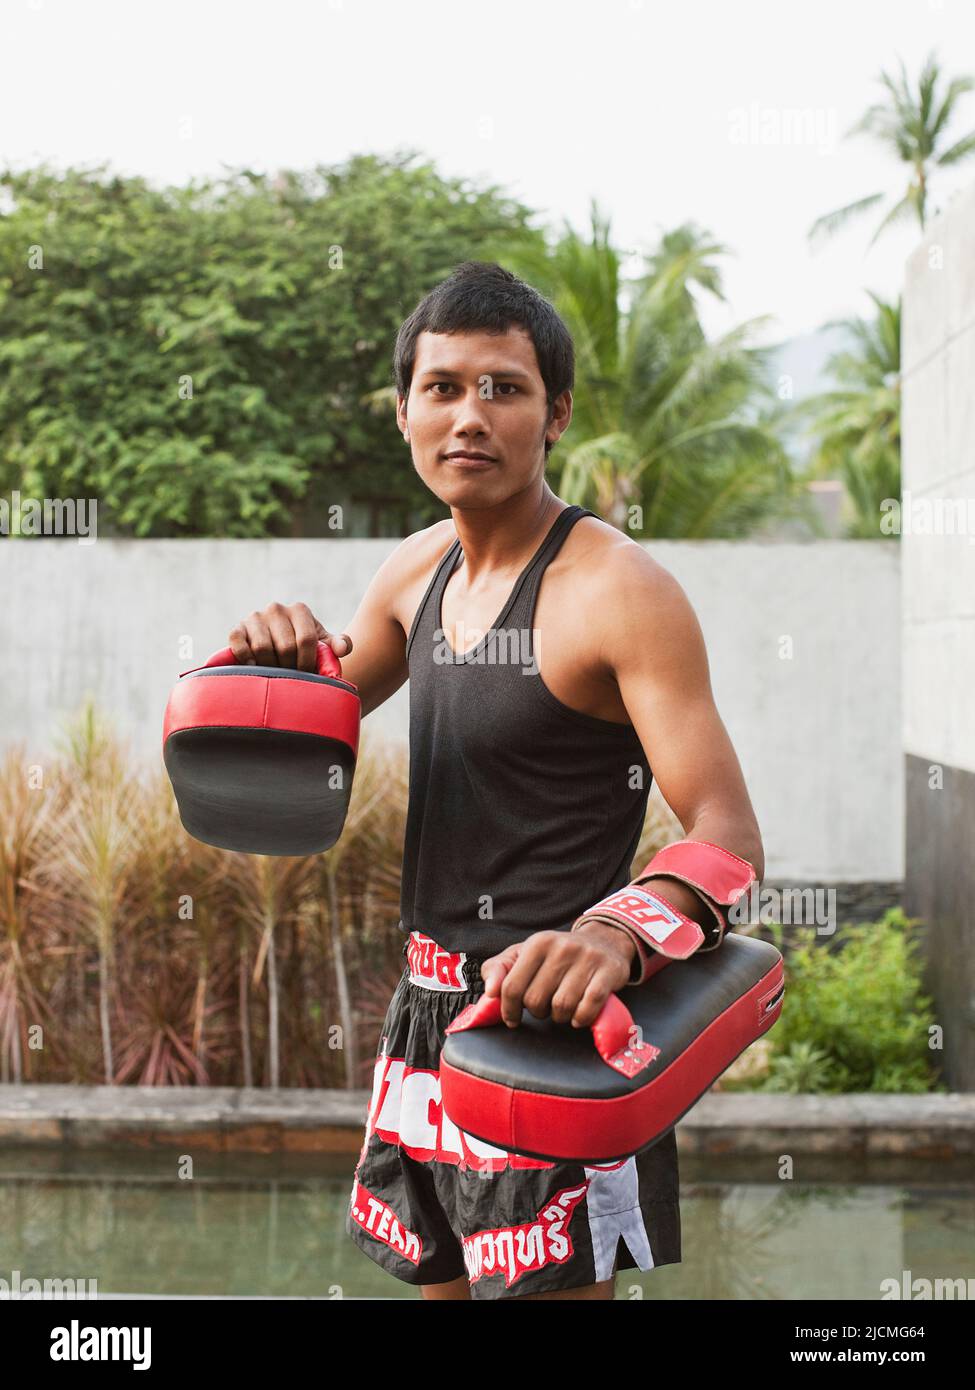 Un instructeur thaïlandais de muay montre quelques mouvements de boxe thaï. Phuket, Thaïlande. Banque D'Images